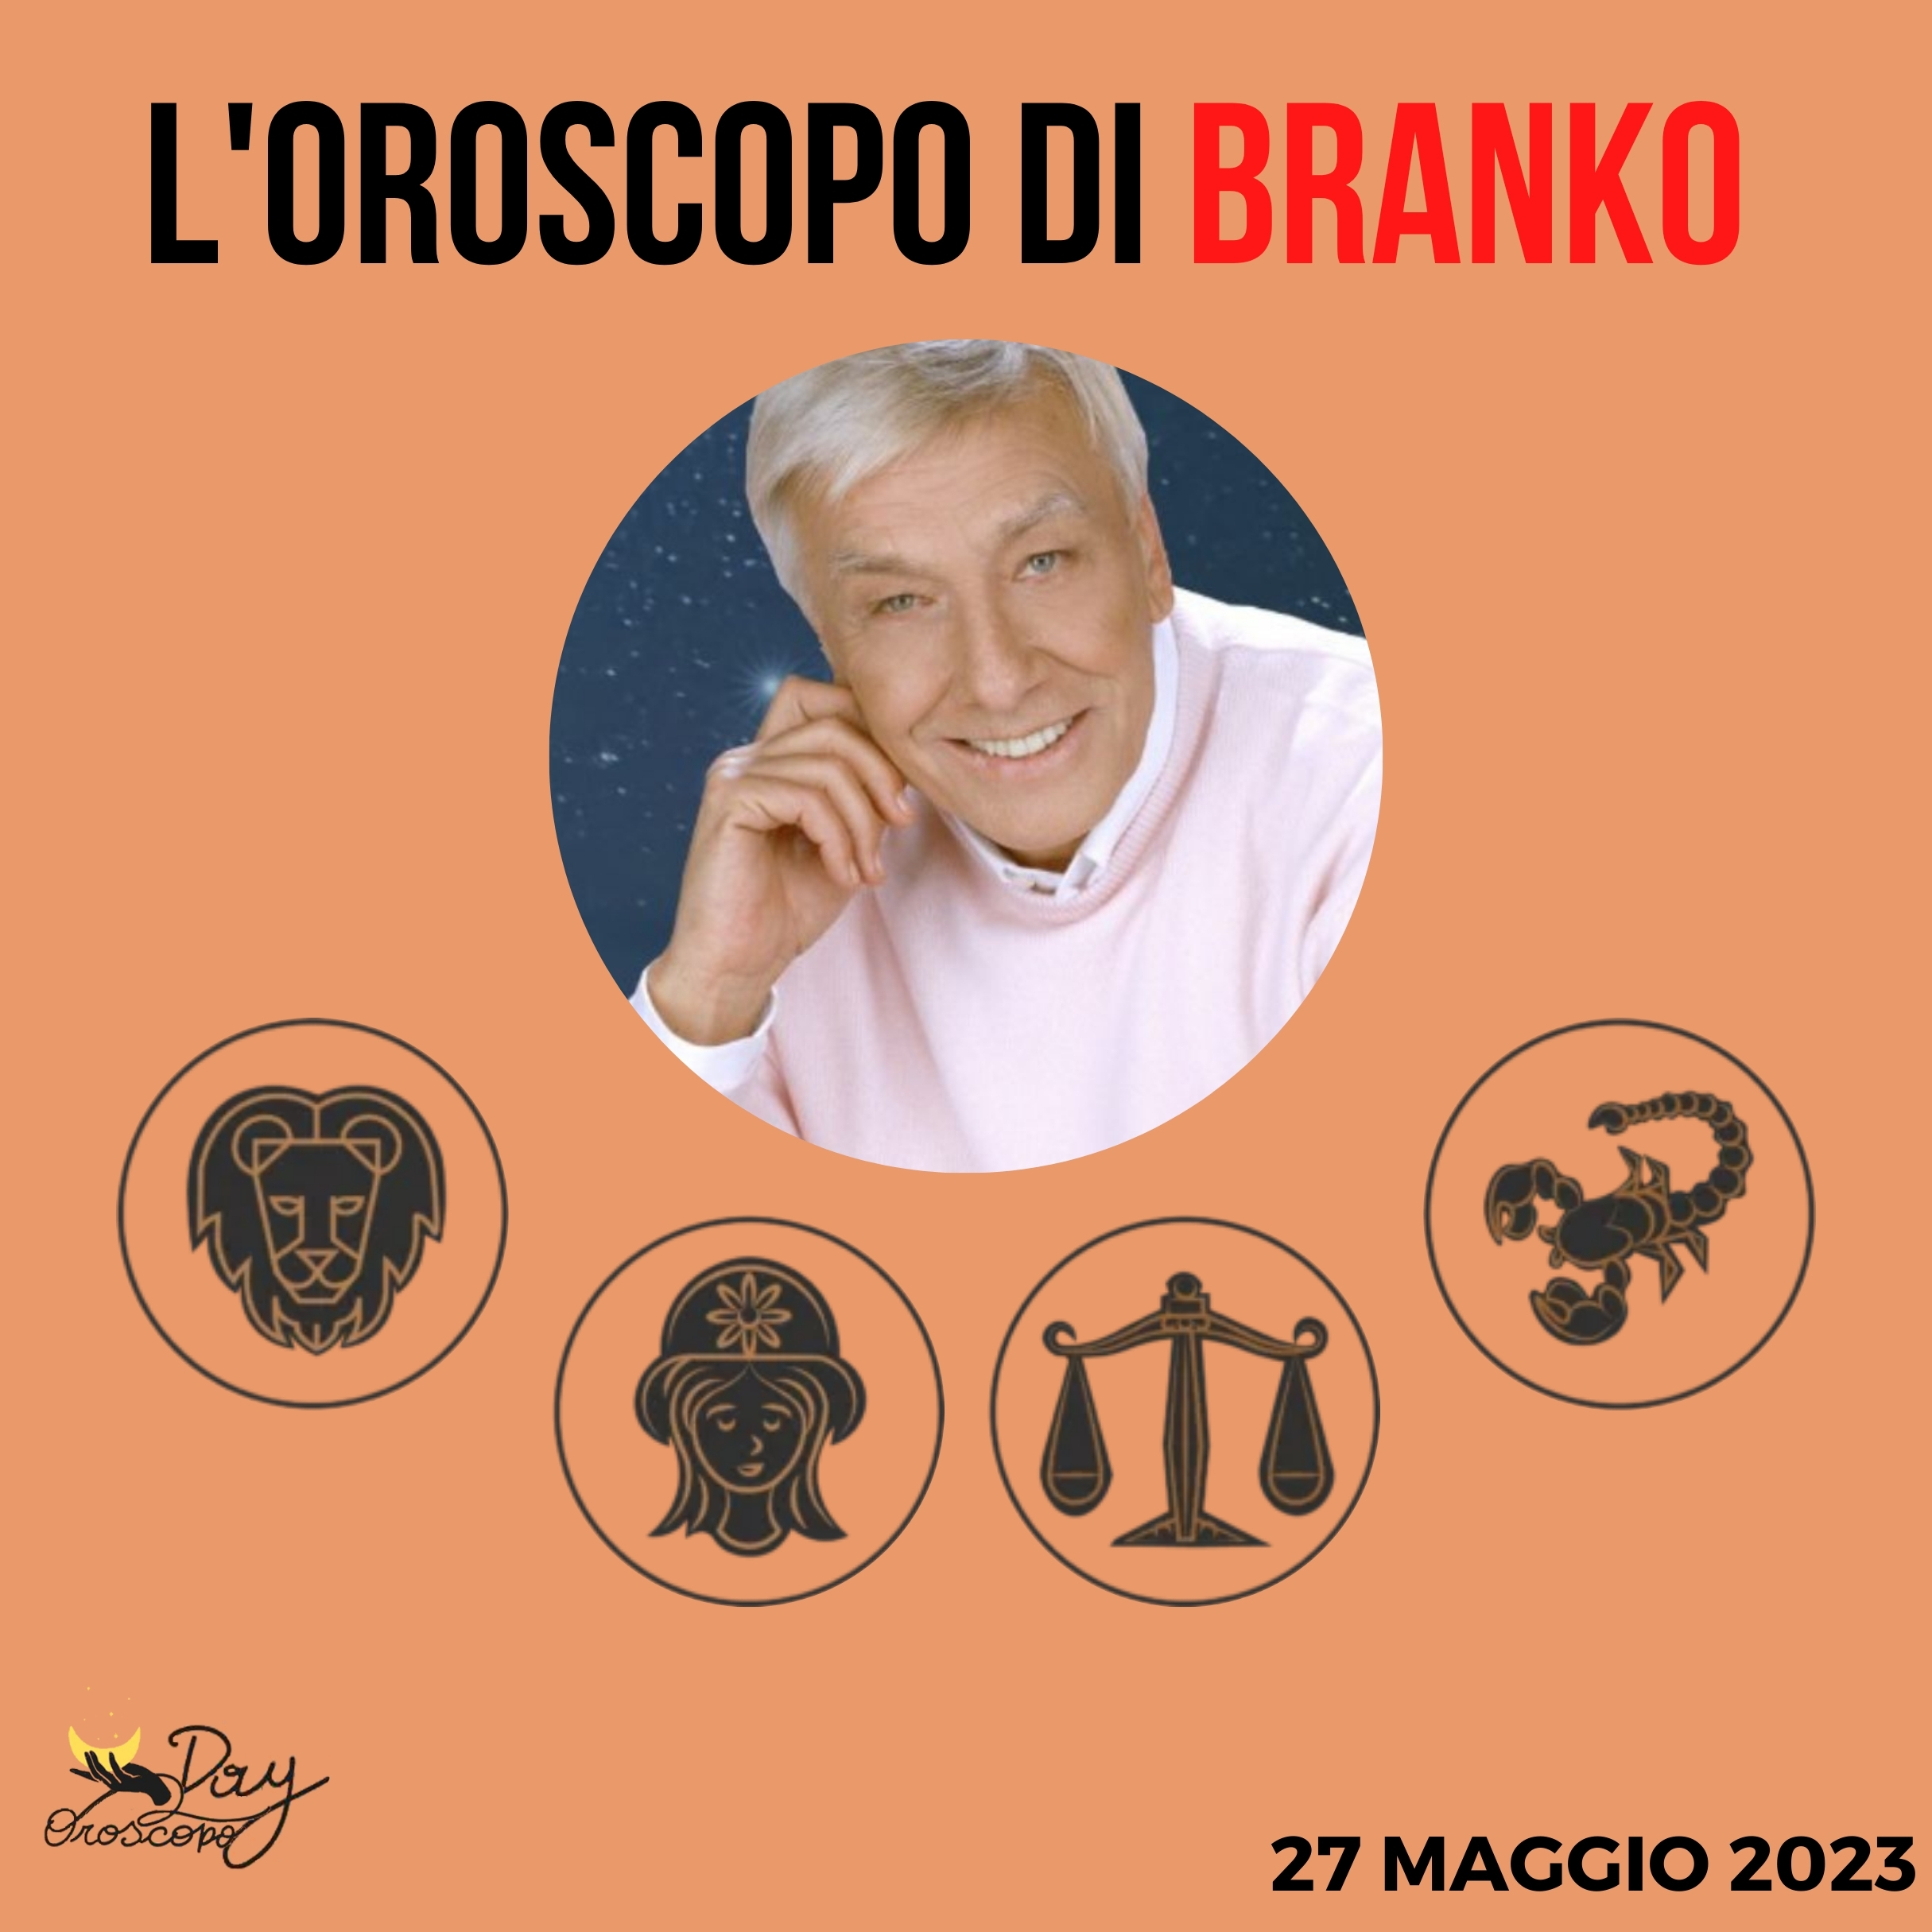 Oroscopo oggi domani Branko 27 maggio Leone Vergine Bilancia Scorpione